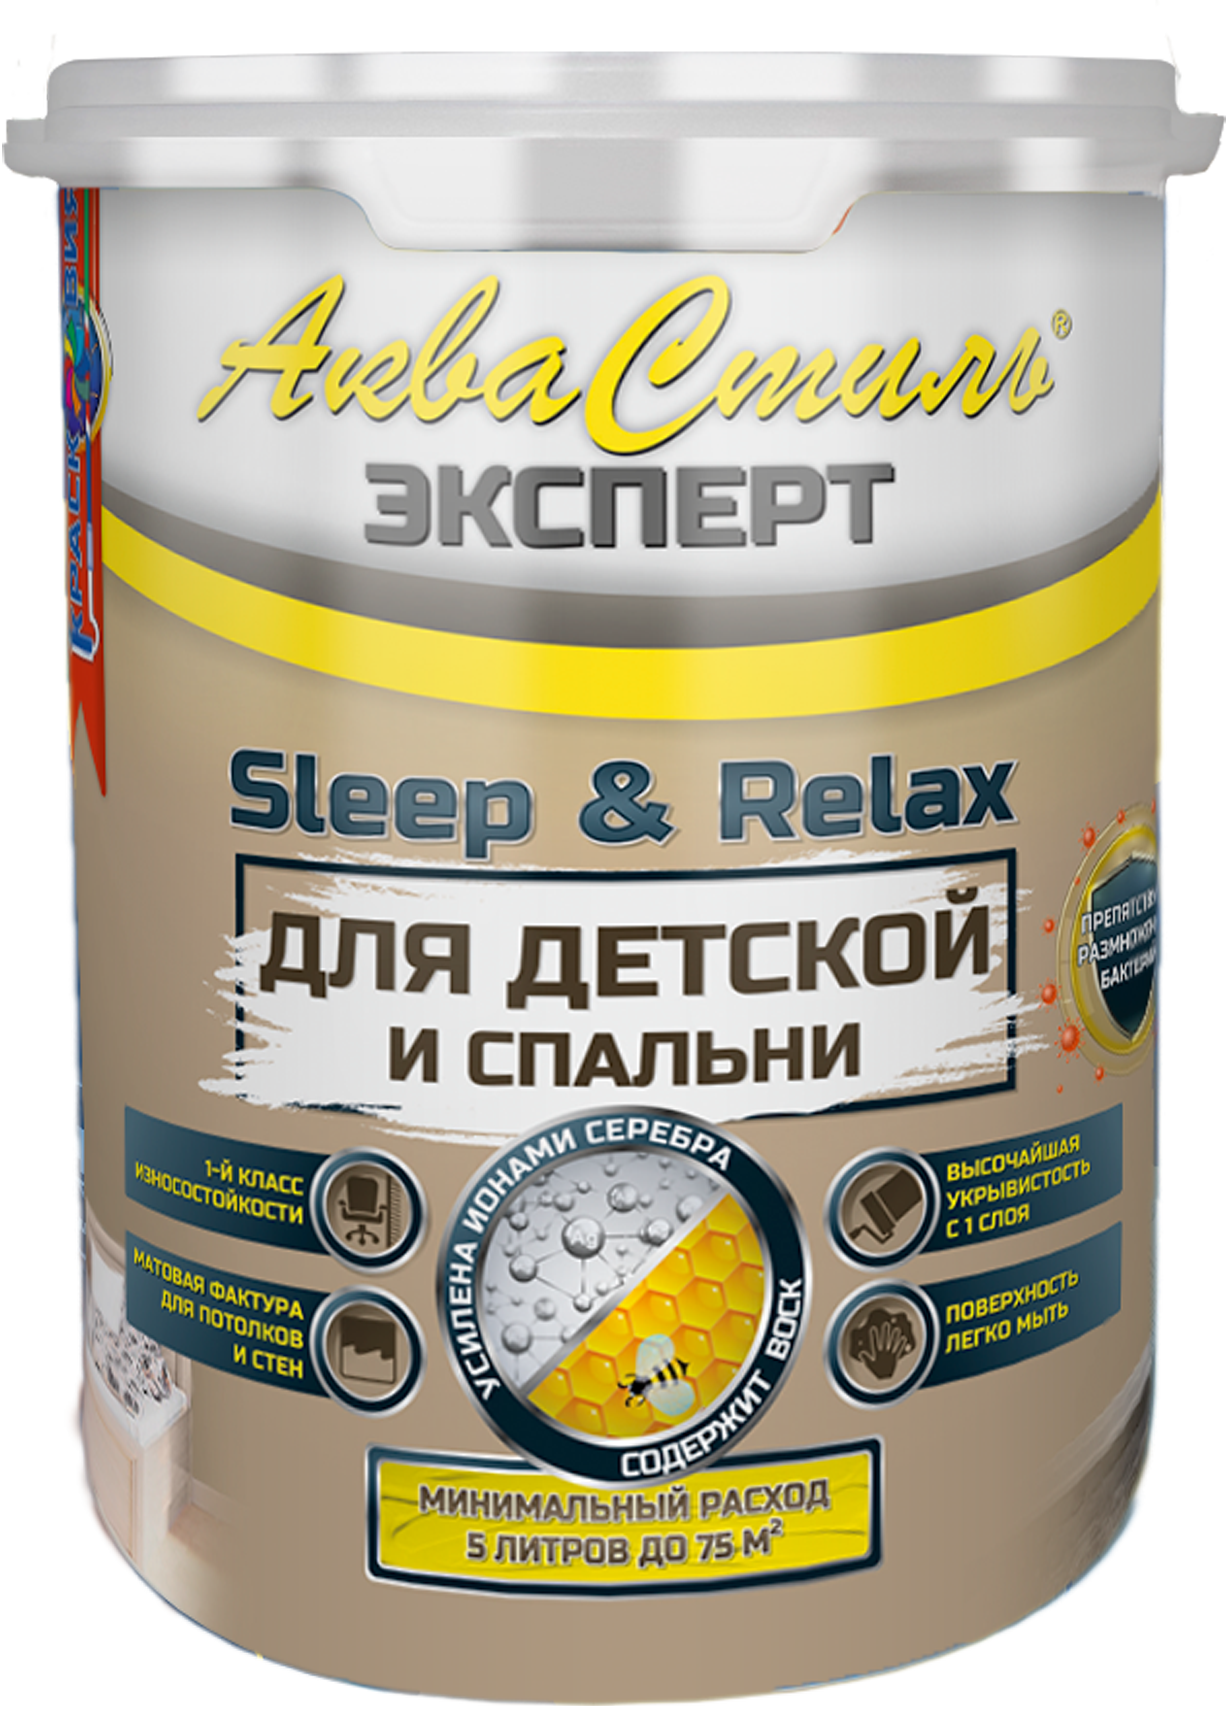 Краска для стен и потолков в детских и спальнях, АкваСтиль Эксперт Sleep&Relax, 1 л. эмаль эксперт по ржавчине 3 в 1 серебро 800 г